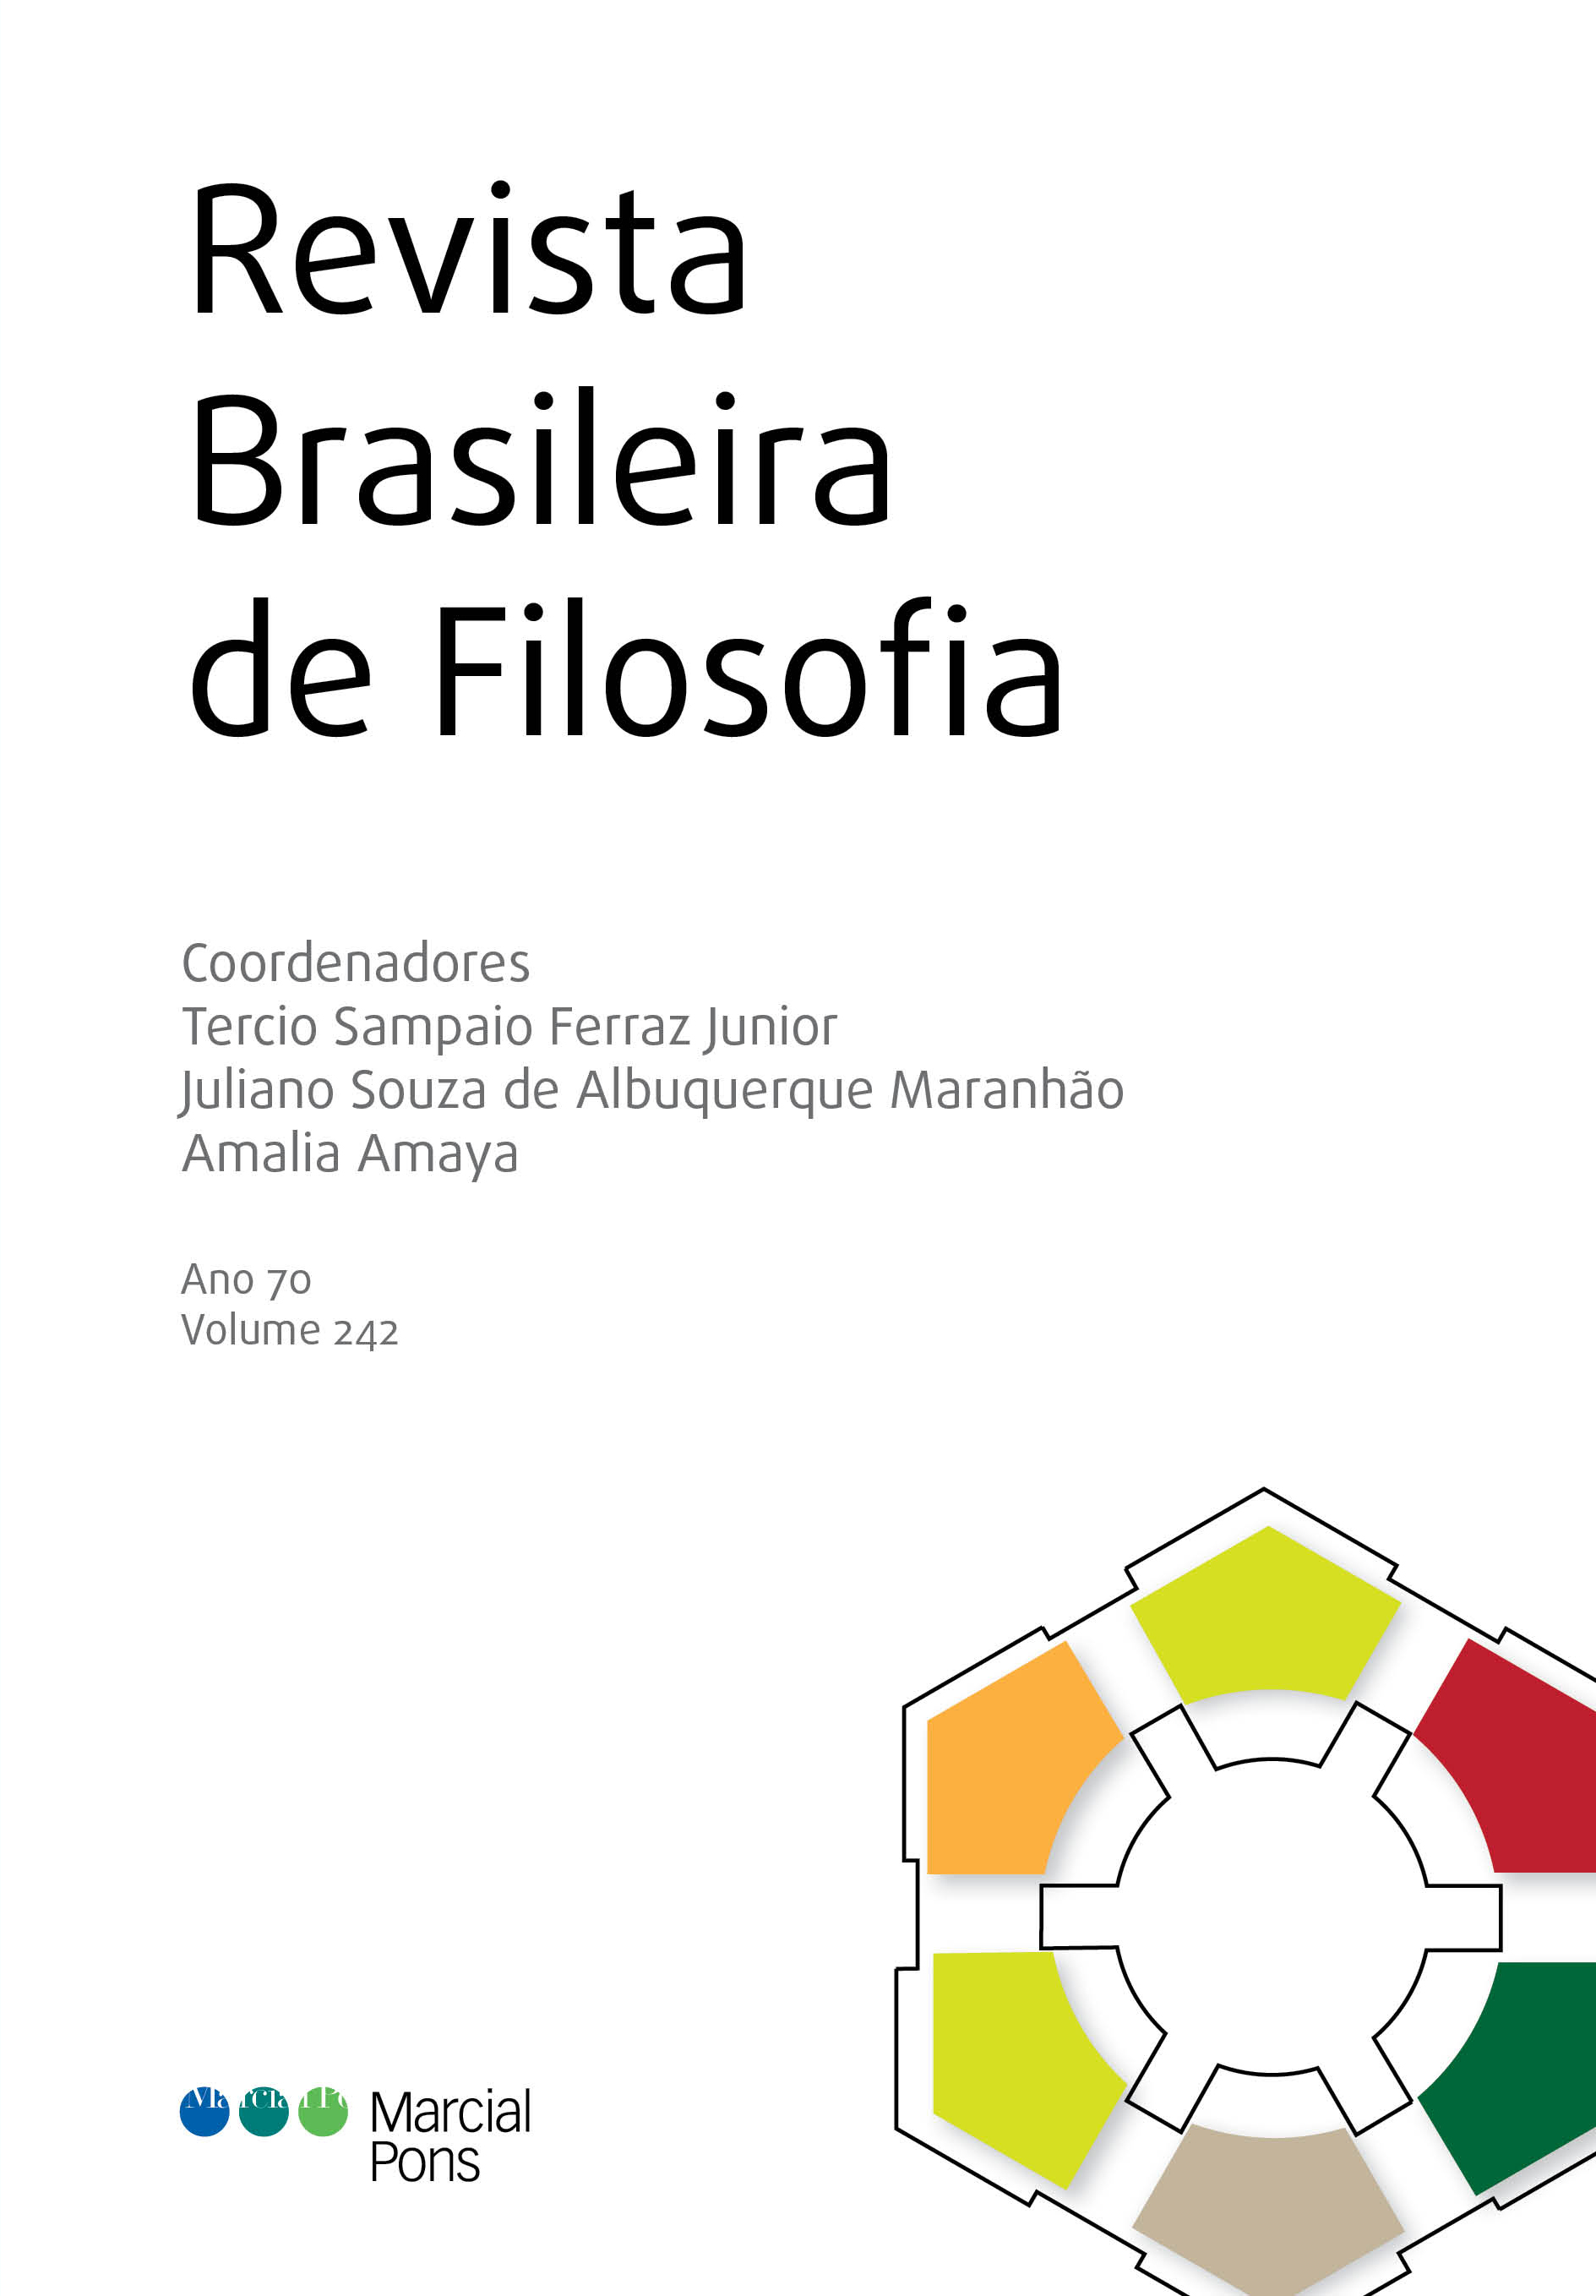 Revista Brasileira de Filosofia. Nº 242. 101067157